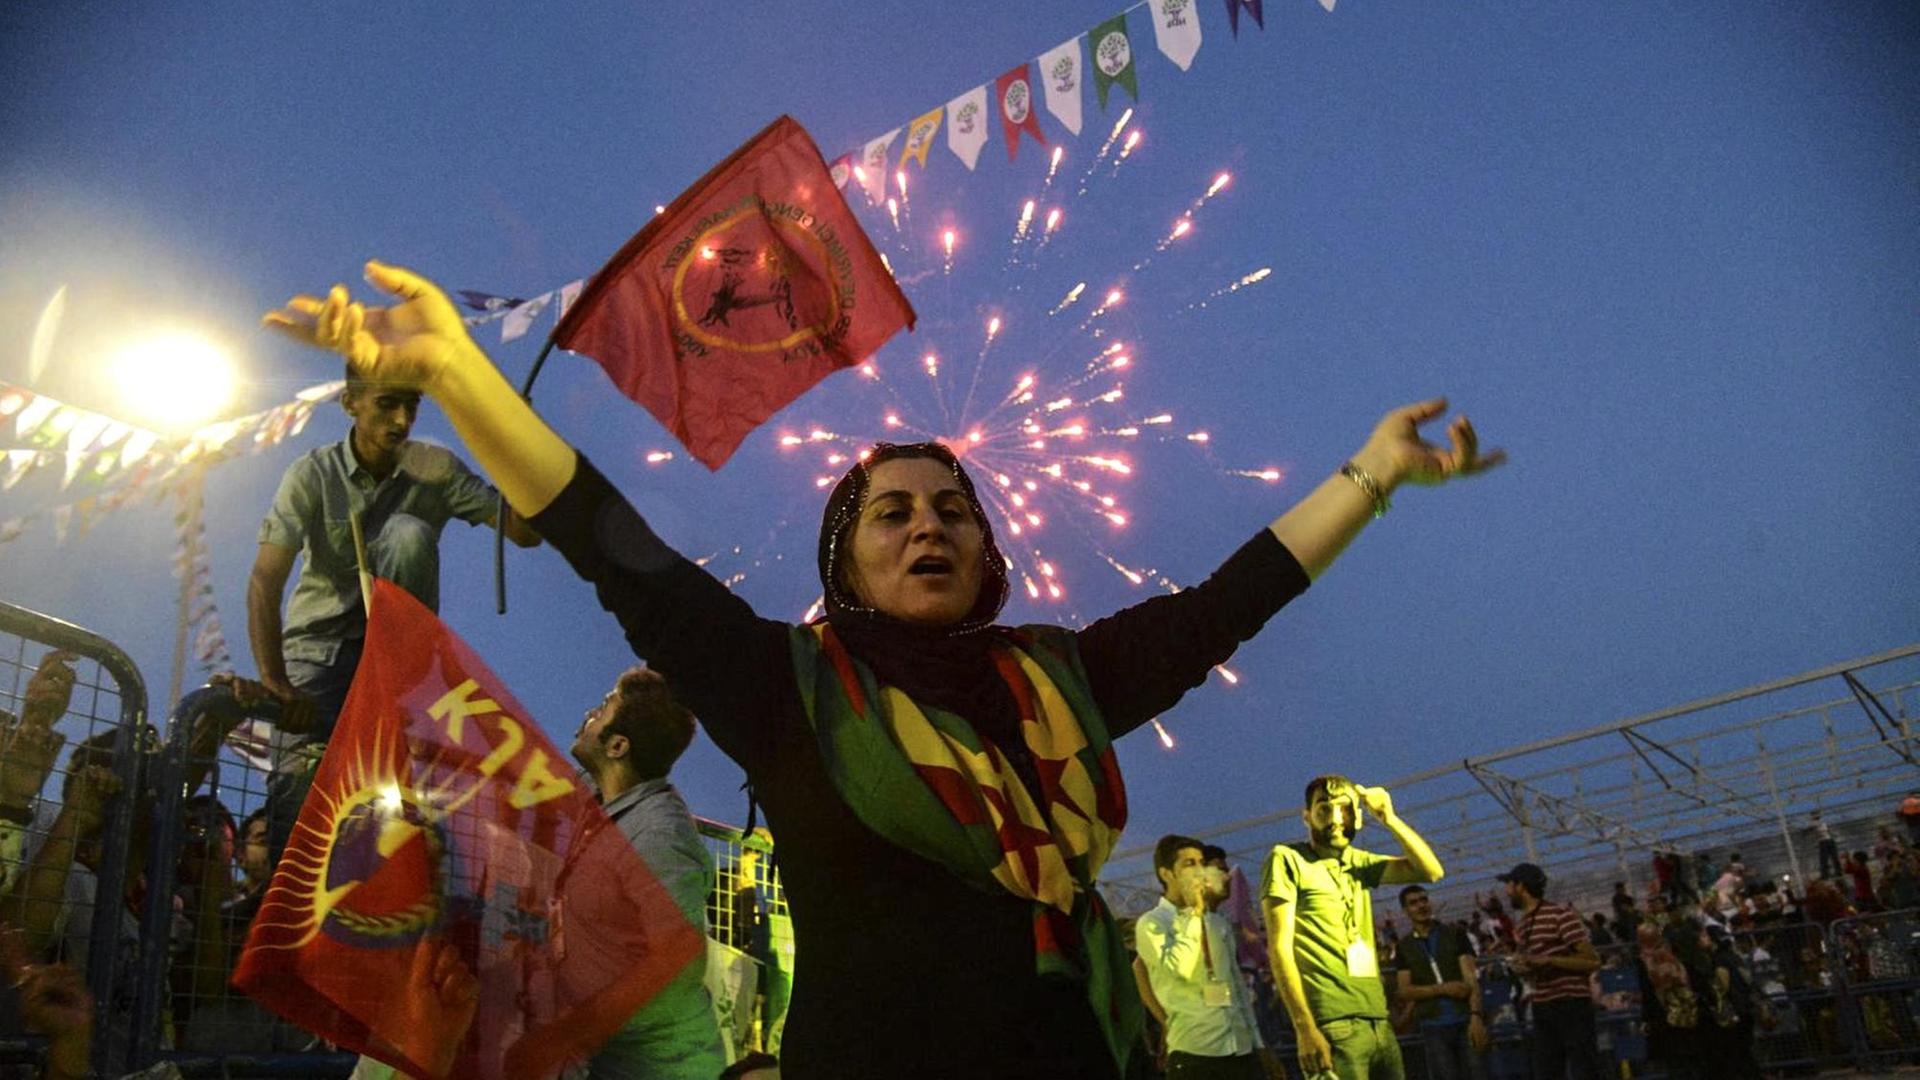 Eine Frau reißt die Arme in die Luft. Im Hintergrund Fahnen und Feuerwerk.